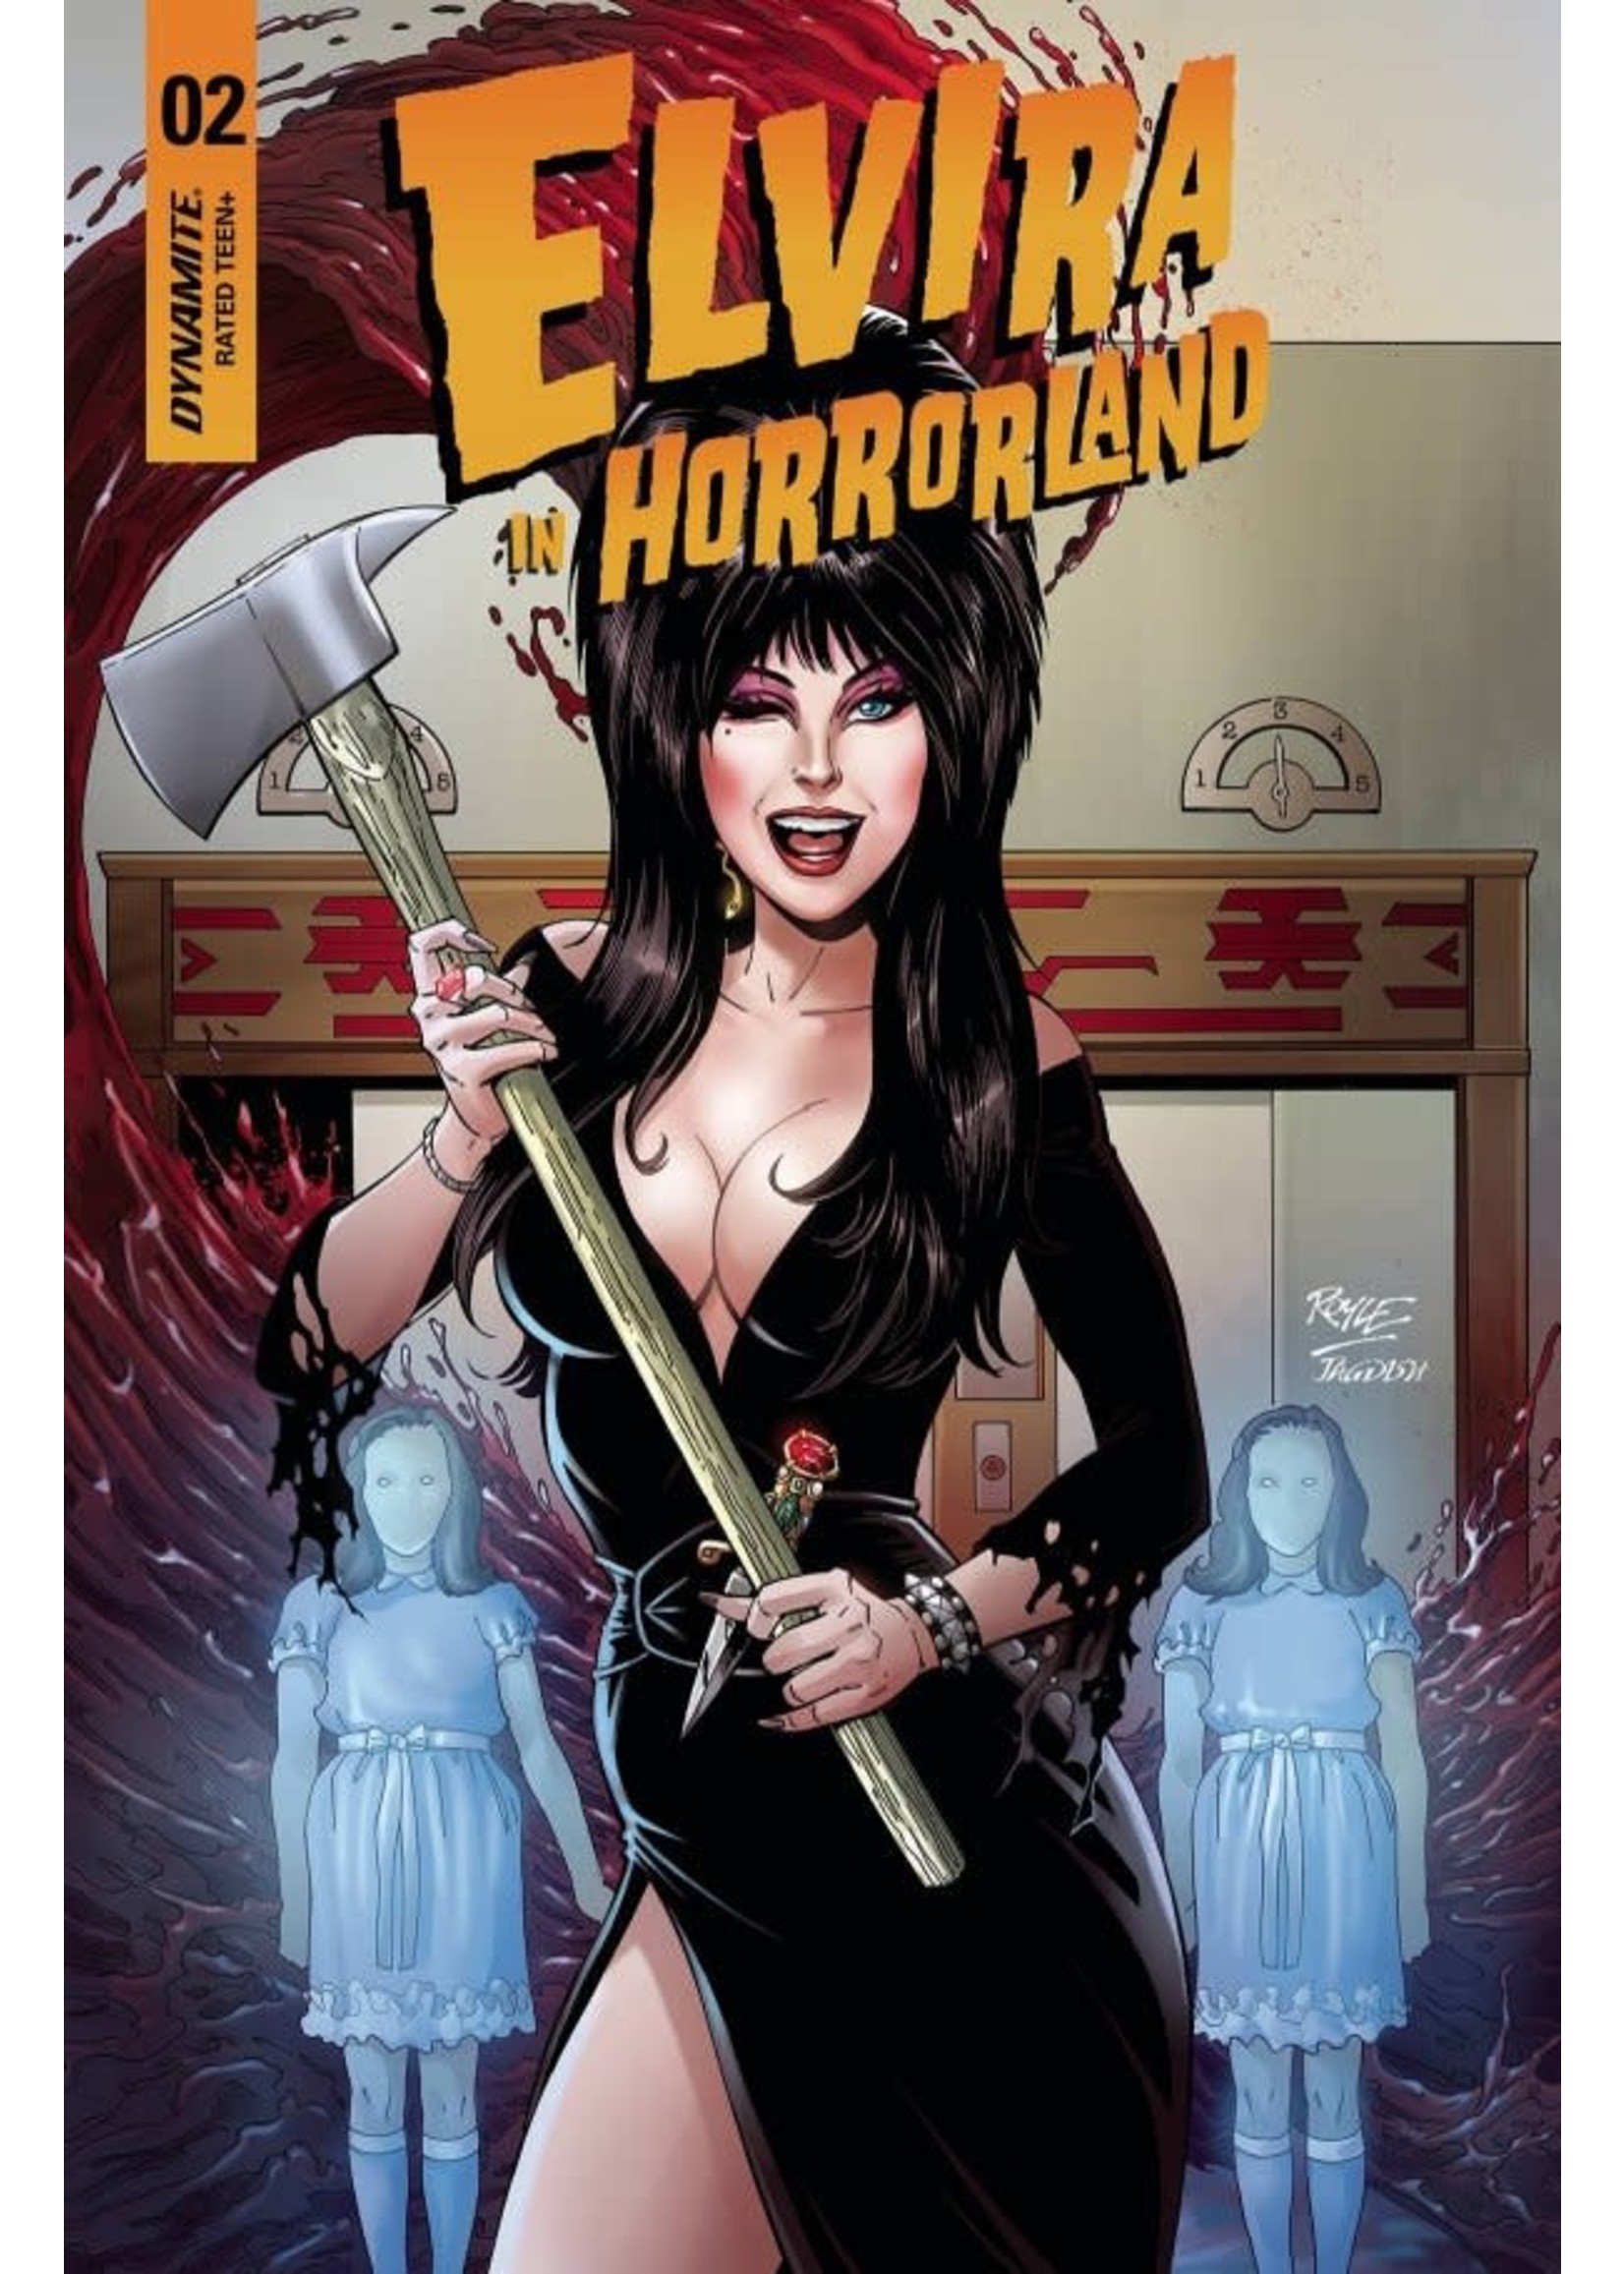 Elvira Elvira in Horrorland #2